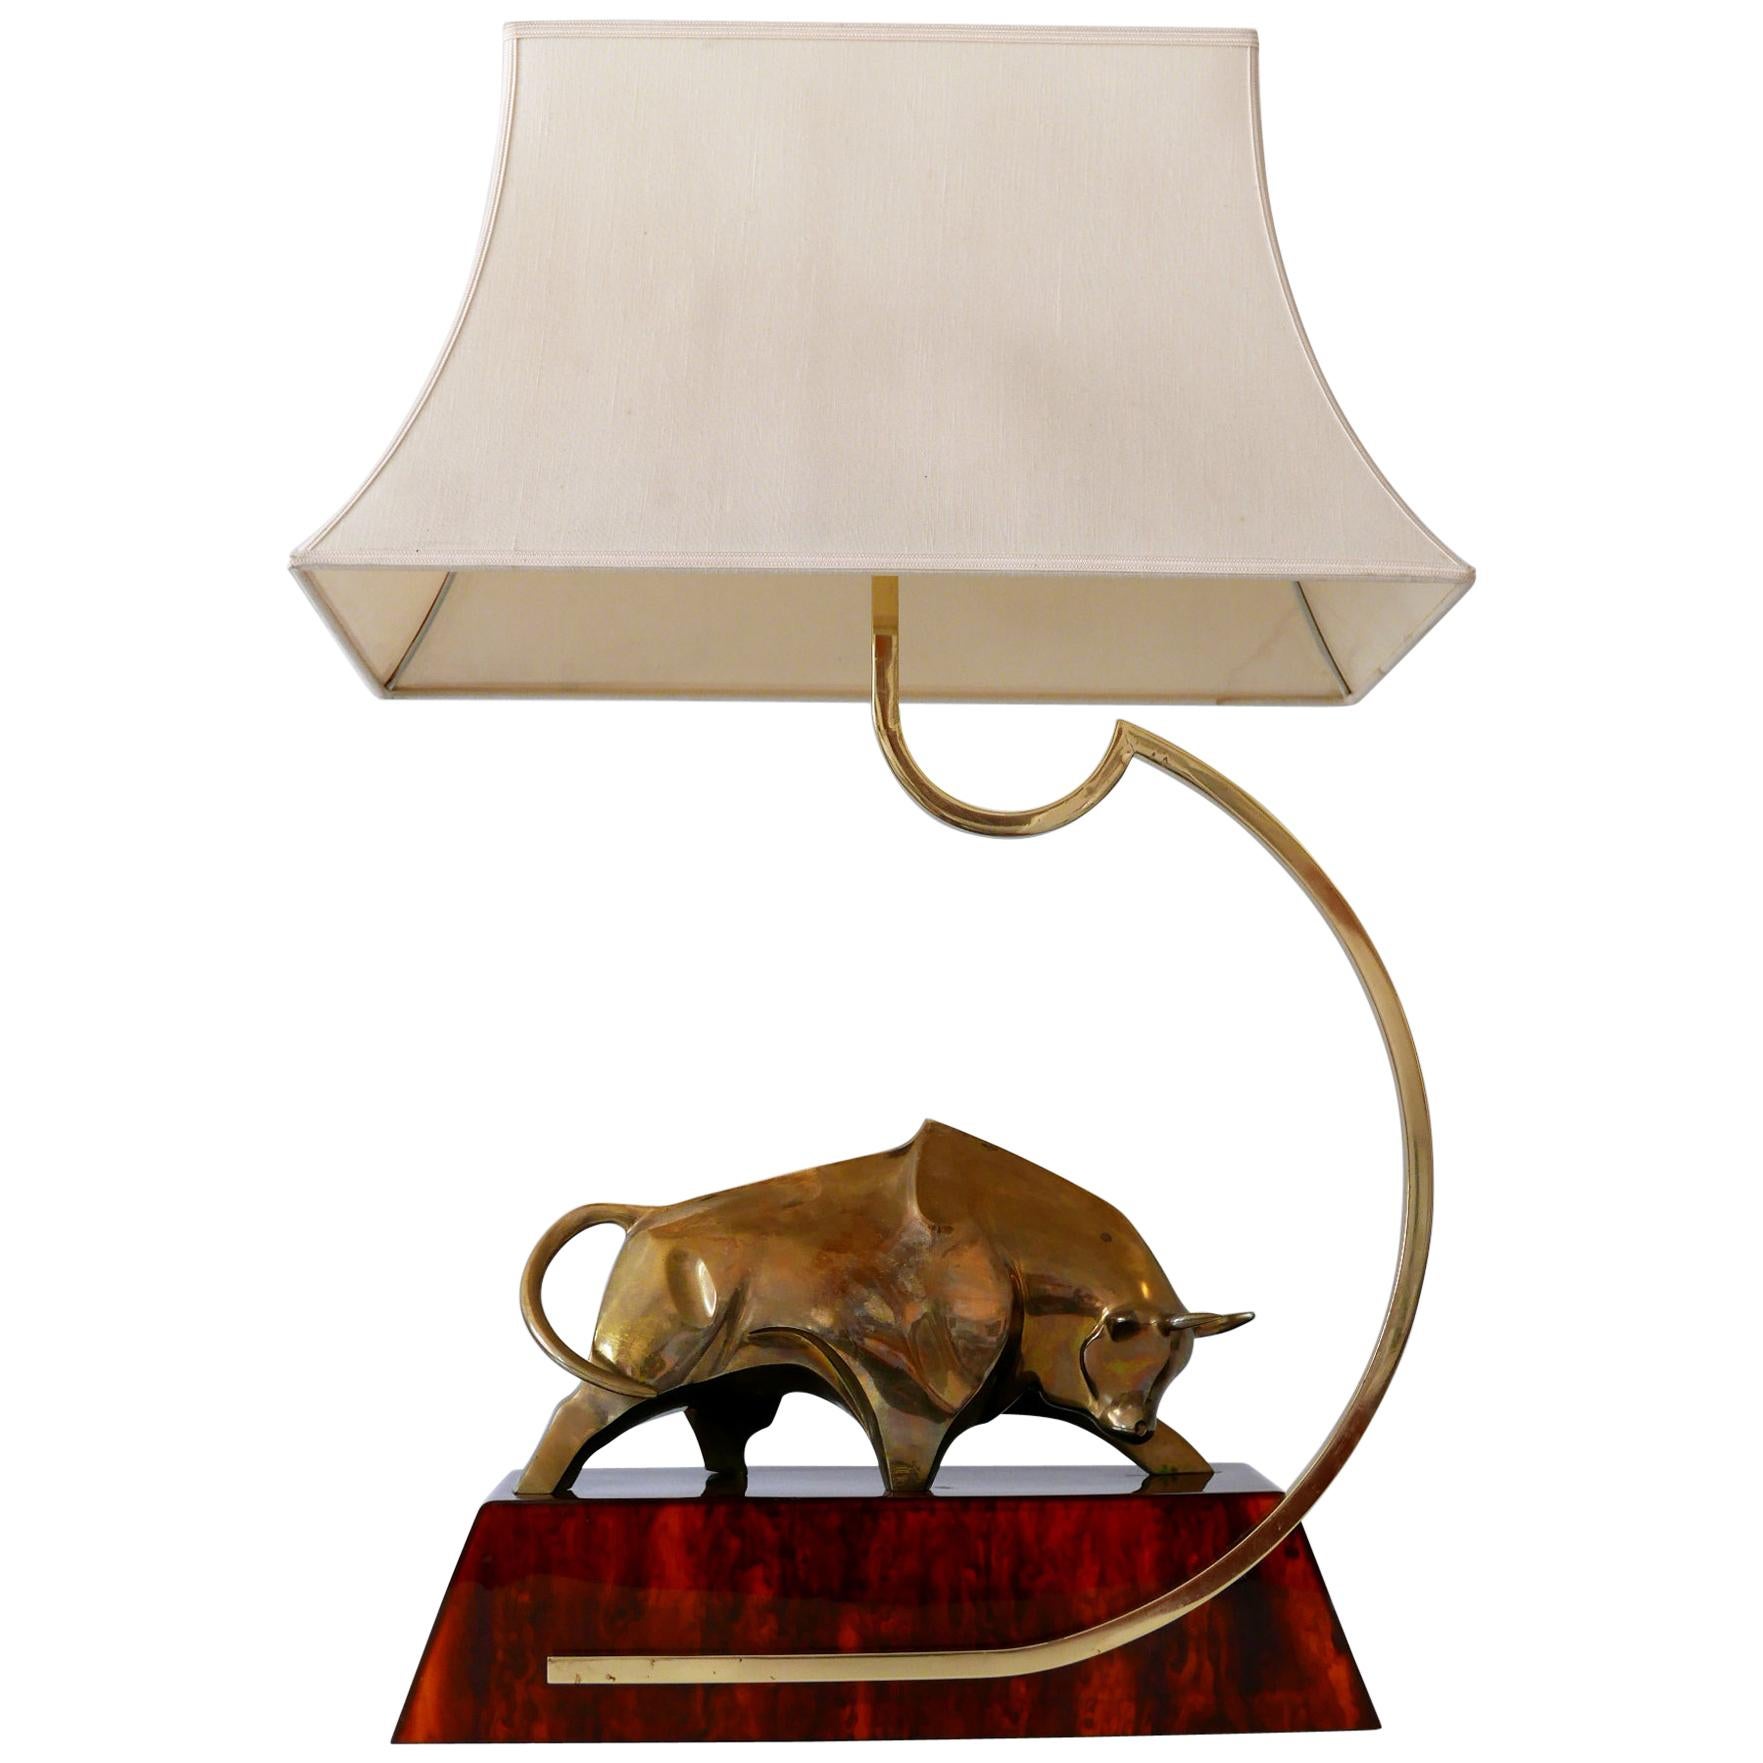 Huge Modernist Brass Light Object or Table Lamp Bull by D. Delo for Pragos Italy